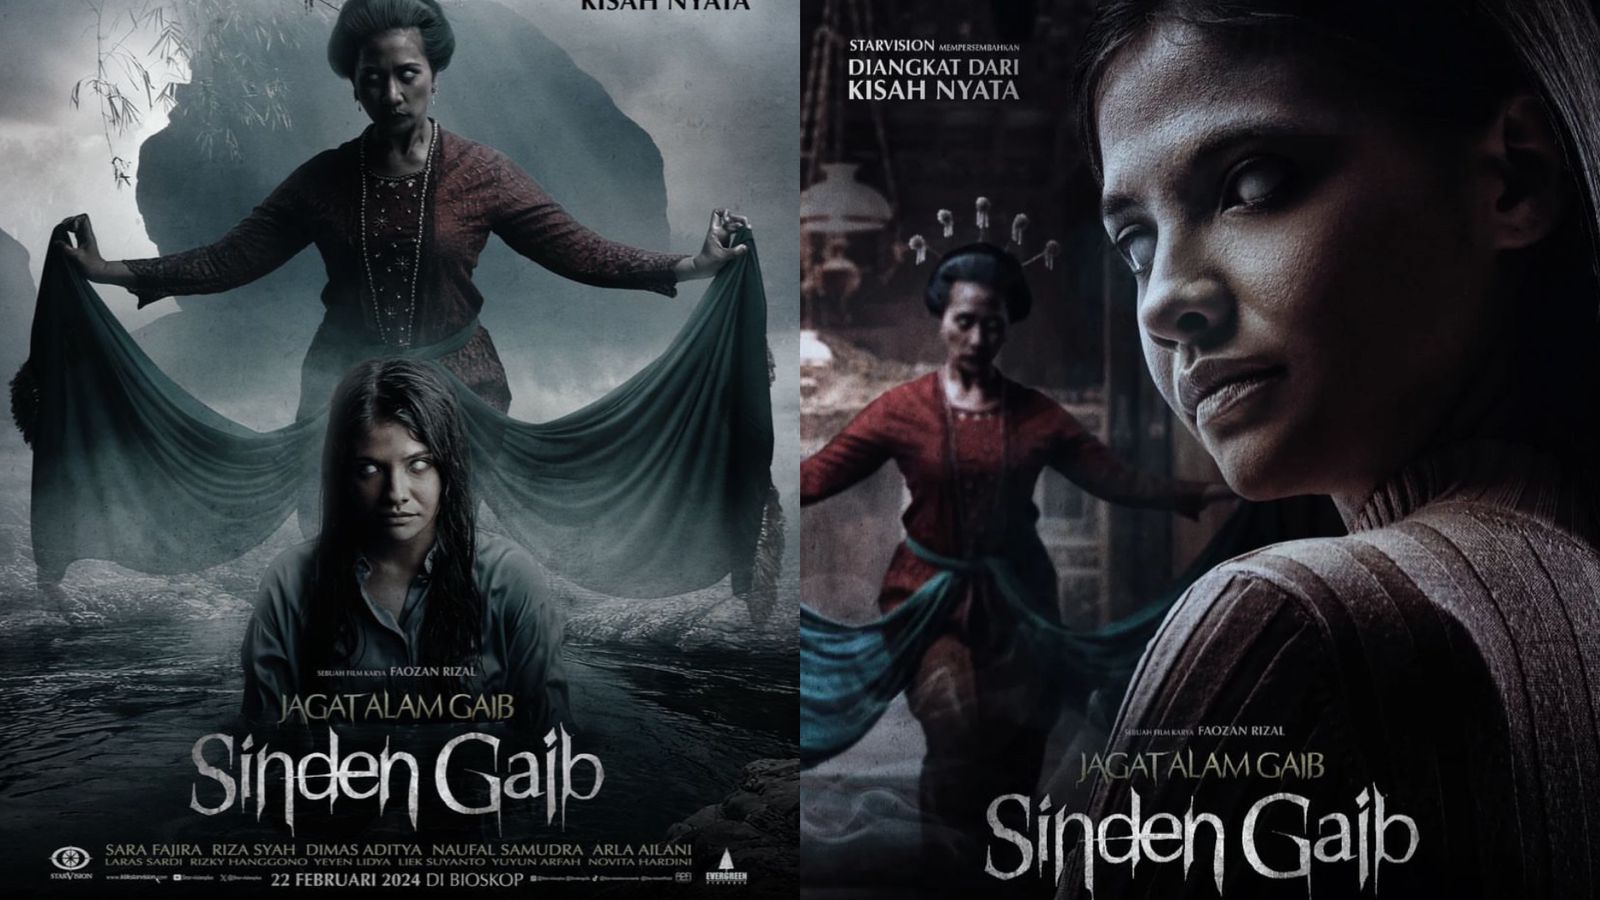 Film Sinden Gaib Tayang Februari 2024, Inilah Sinopsis Hingga Fakta Menarik Dari Kisah Nyata Horor Jawa Timur